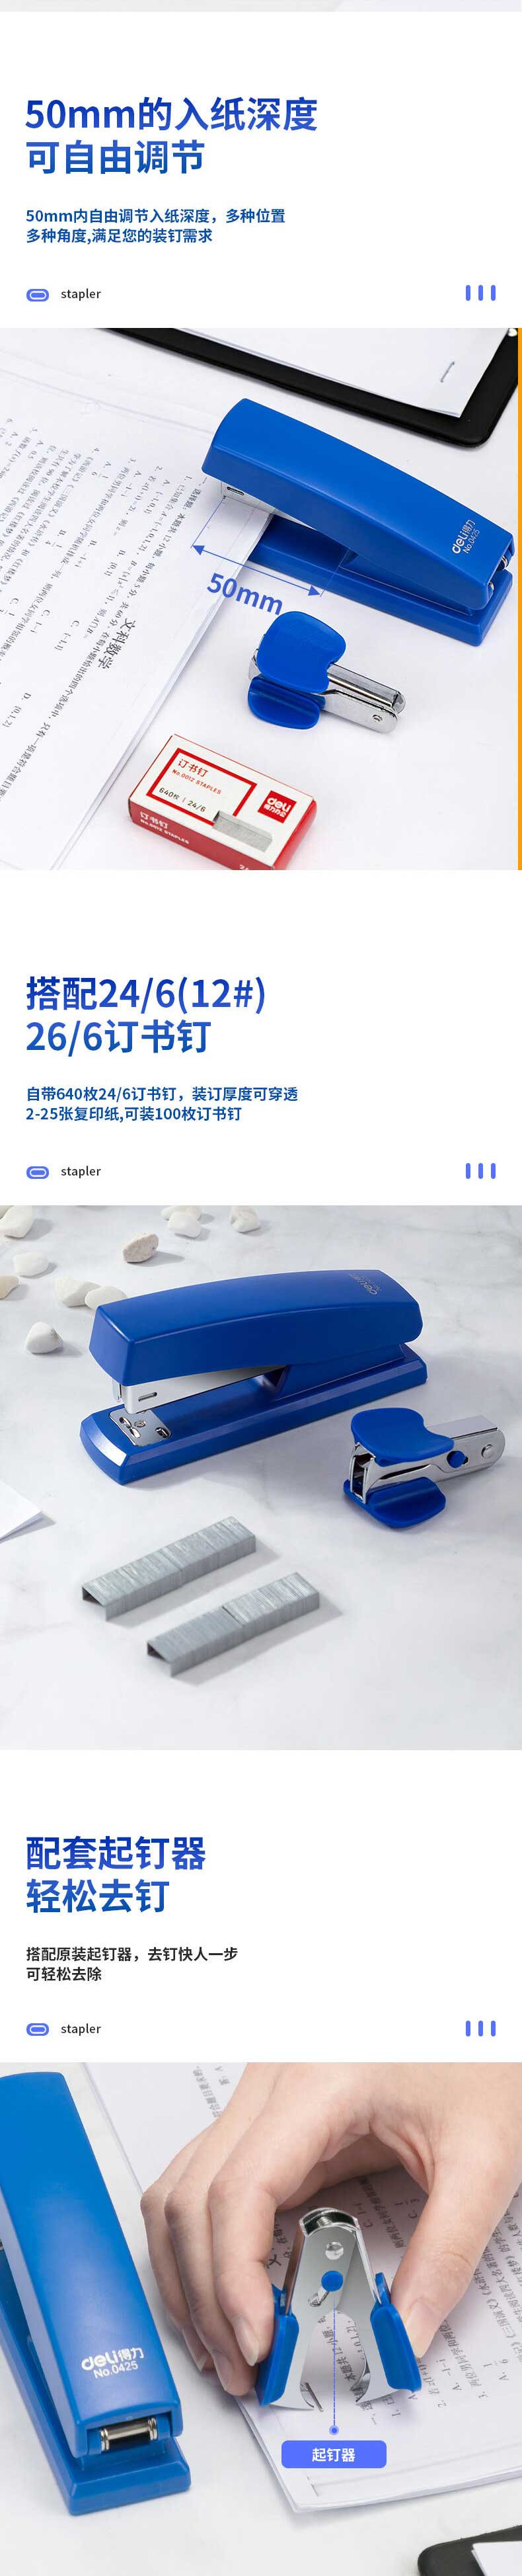 得力/deli 订书机 订书器 起钉器订书针套装 0354蓝色